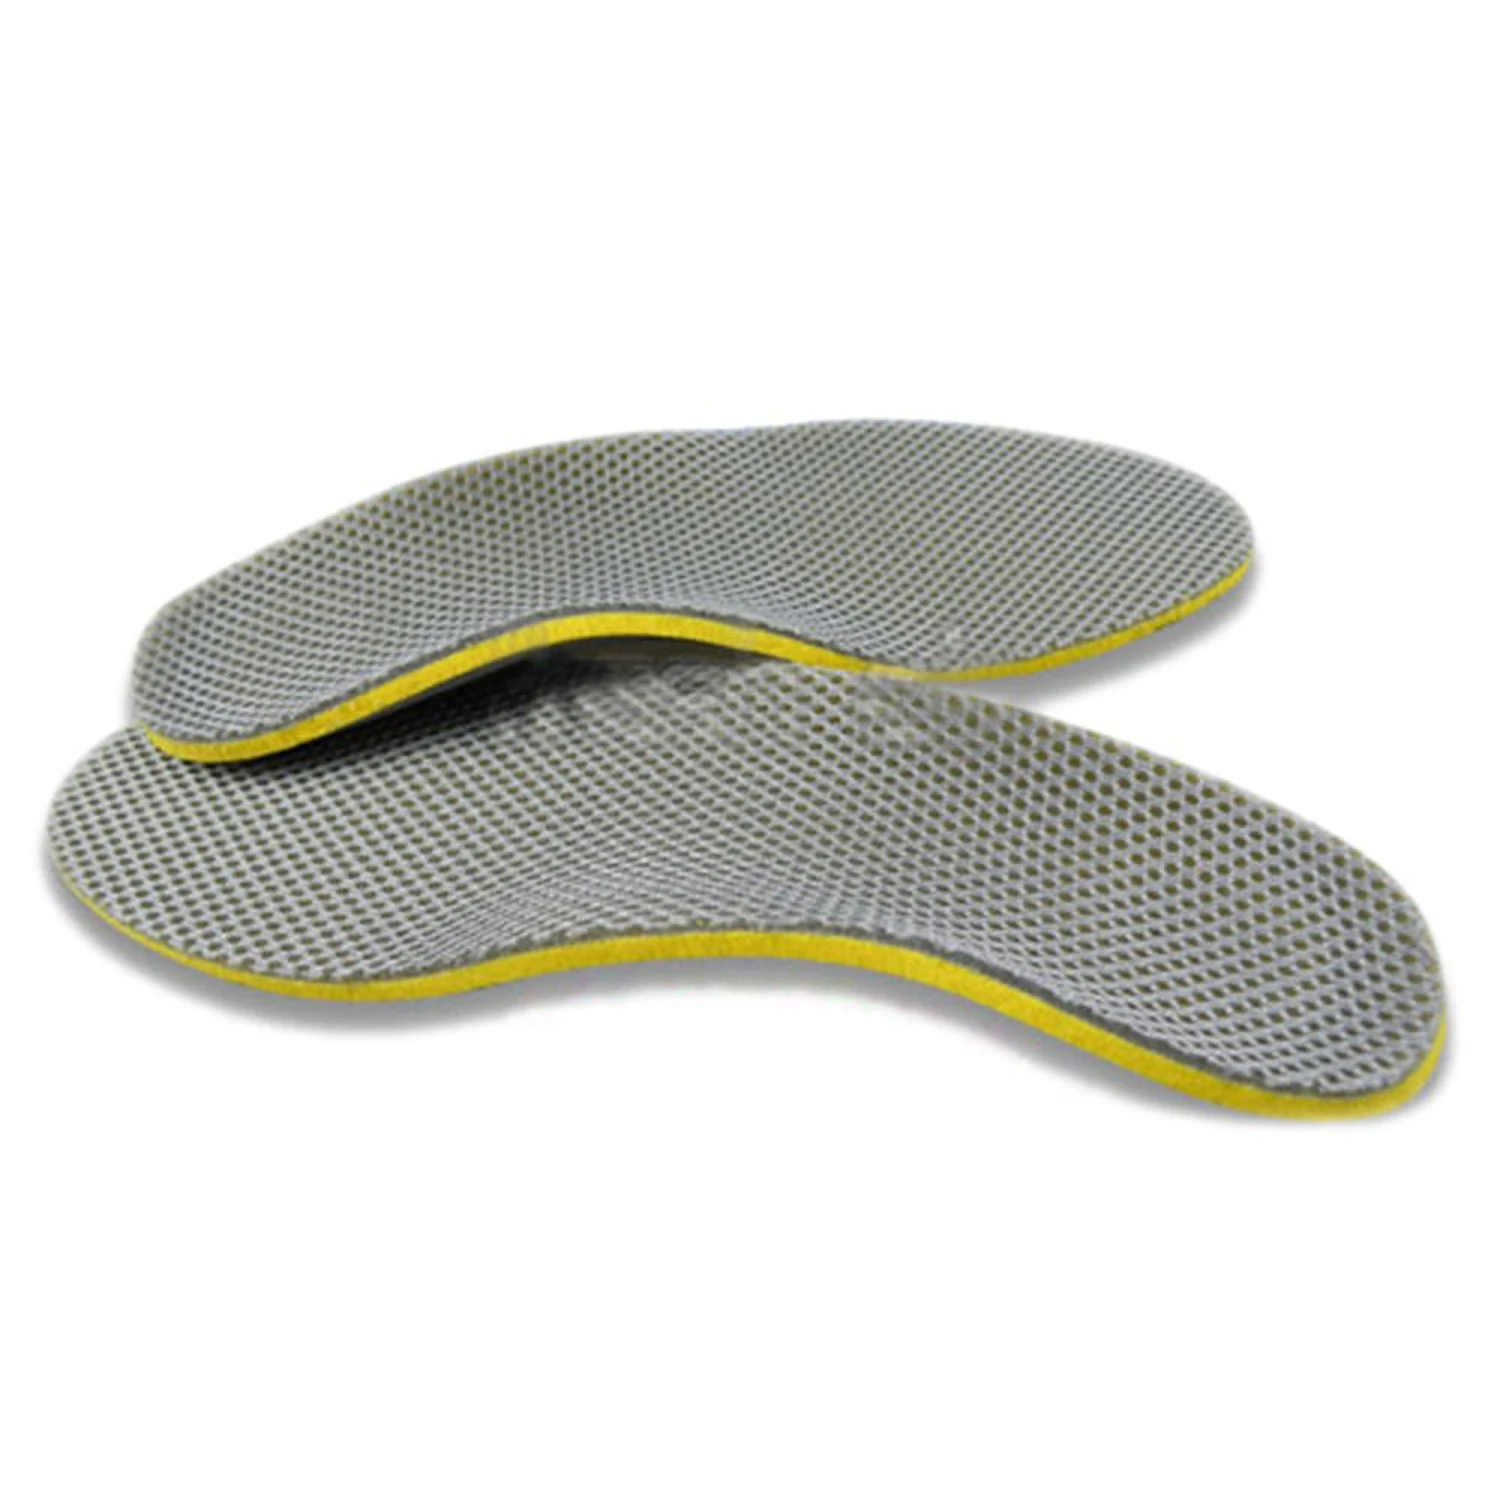 DSGS удобные ортопедические стельки для обуви вставки с высокой поддержкой свода стопы